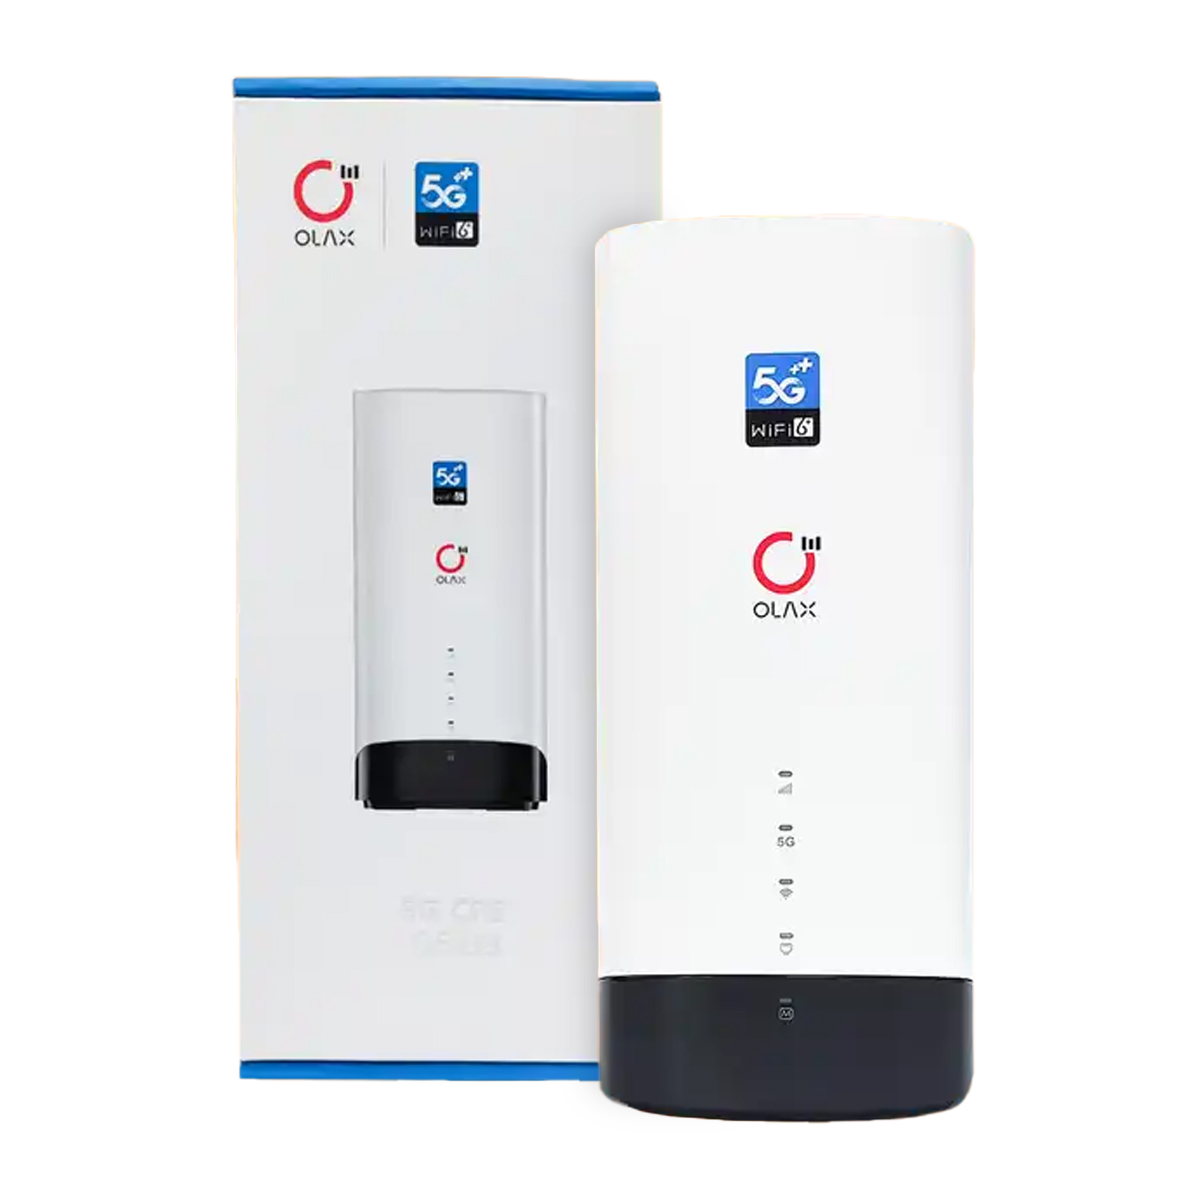 Стаціонарний 4G роутер WiFi з SIM-картою Olax G5018. Підтримка 5G технології. Вигляд спереду - індикатори, коробка. Купити на сайті Marketnet